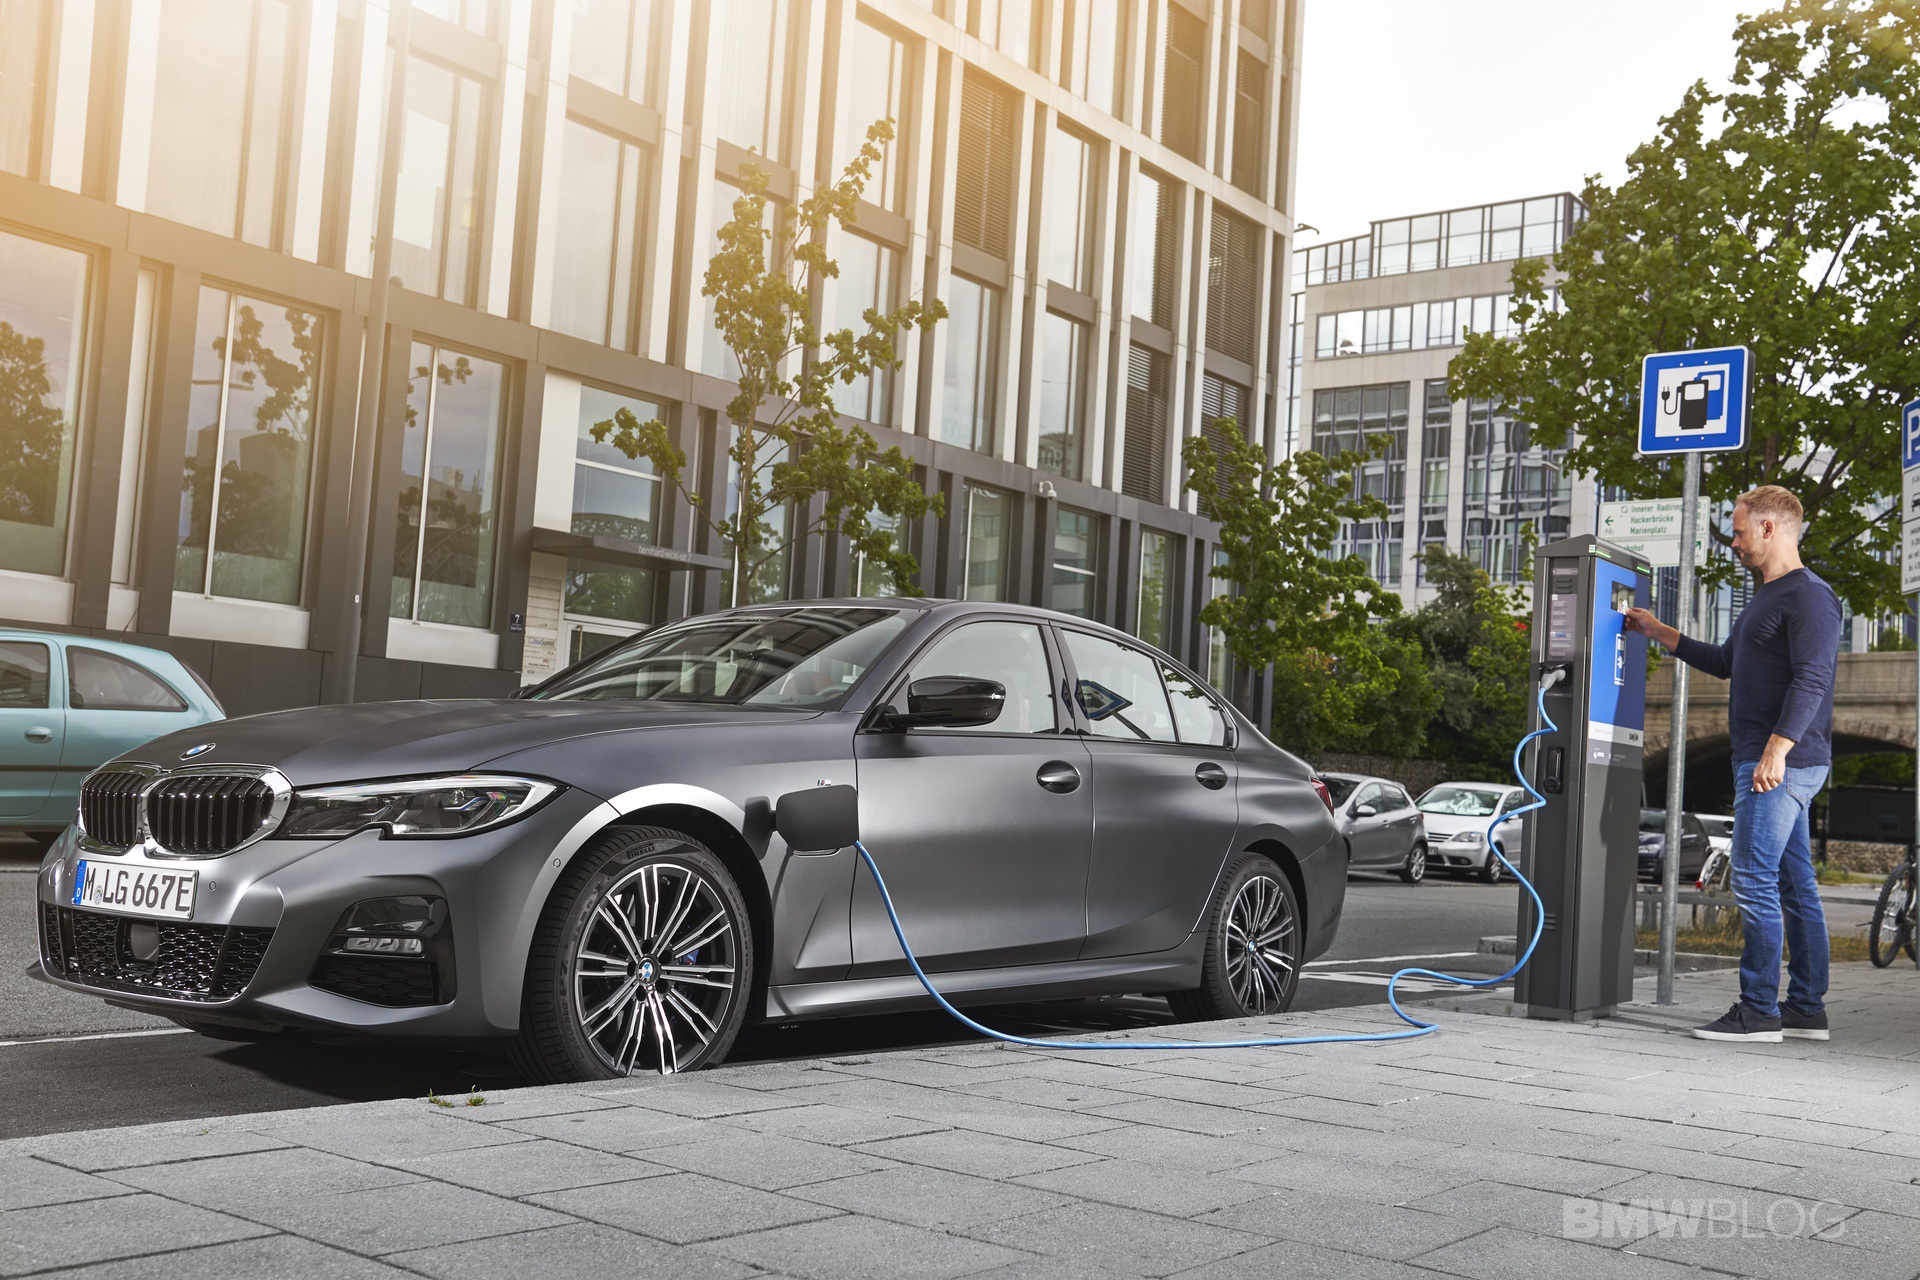  بالصور: أفضل 10 سيارات للعلامات التجارية لعام 2021  2019-2020-BMW-330e-plug-in-hybrid-64